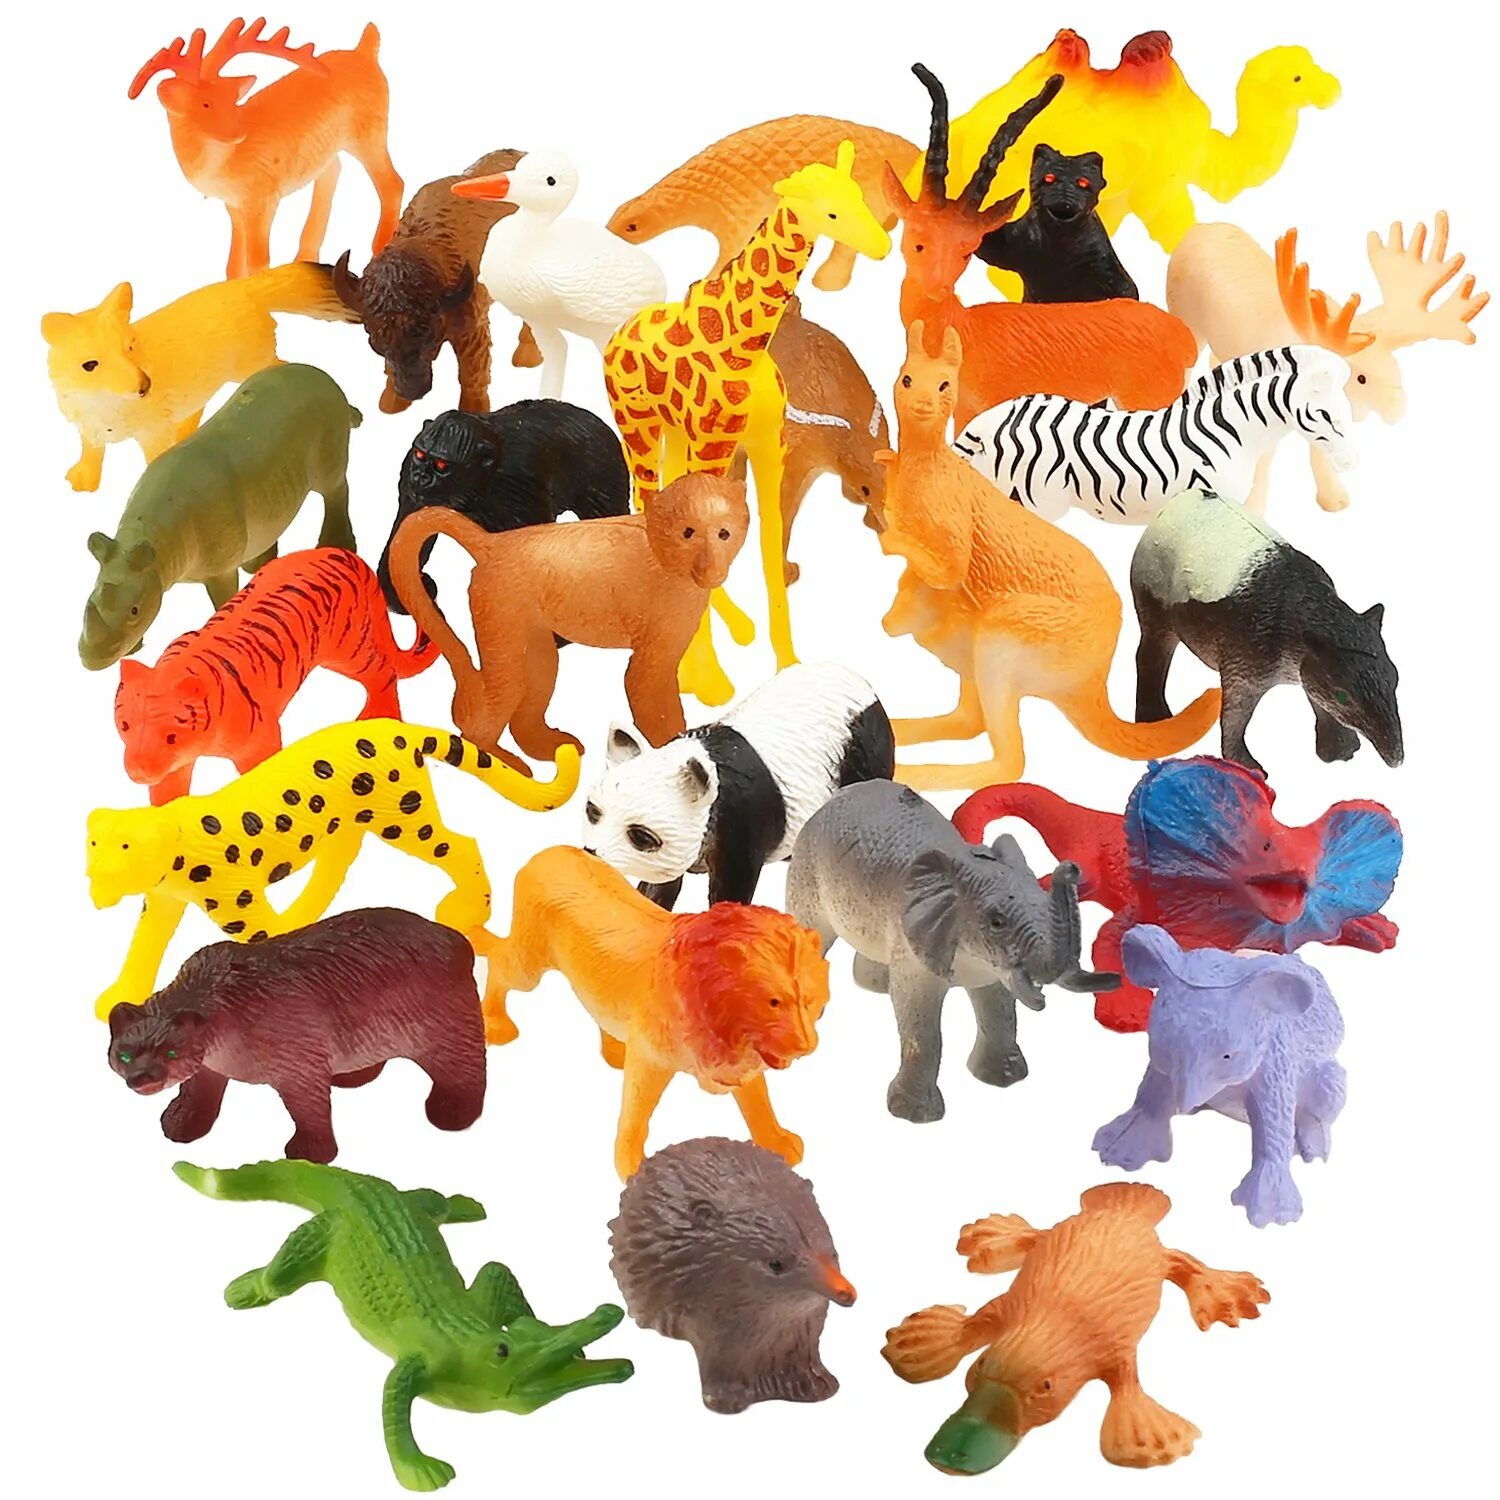 ПЭТ Энималс игрушка. Набор игрушек животных Pianet Wild сафари. DEAGOSTINI игрушки Wild animals Figure. Пластмассовые звери. Animals review